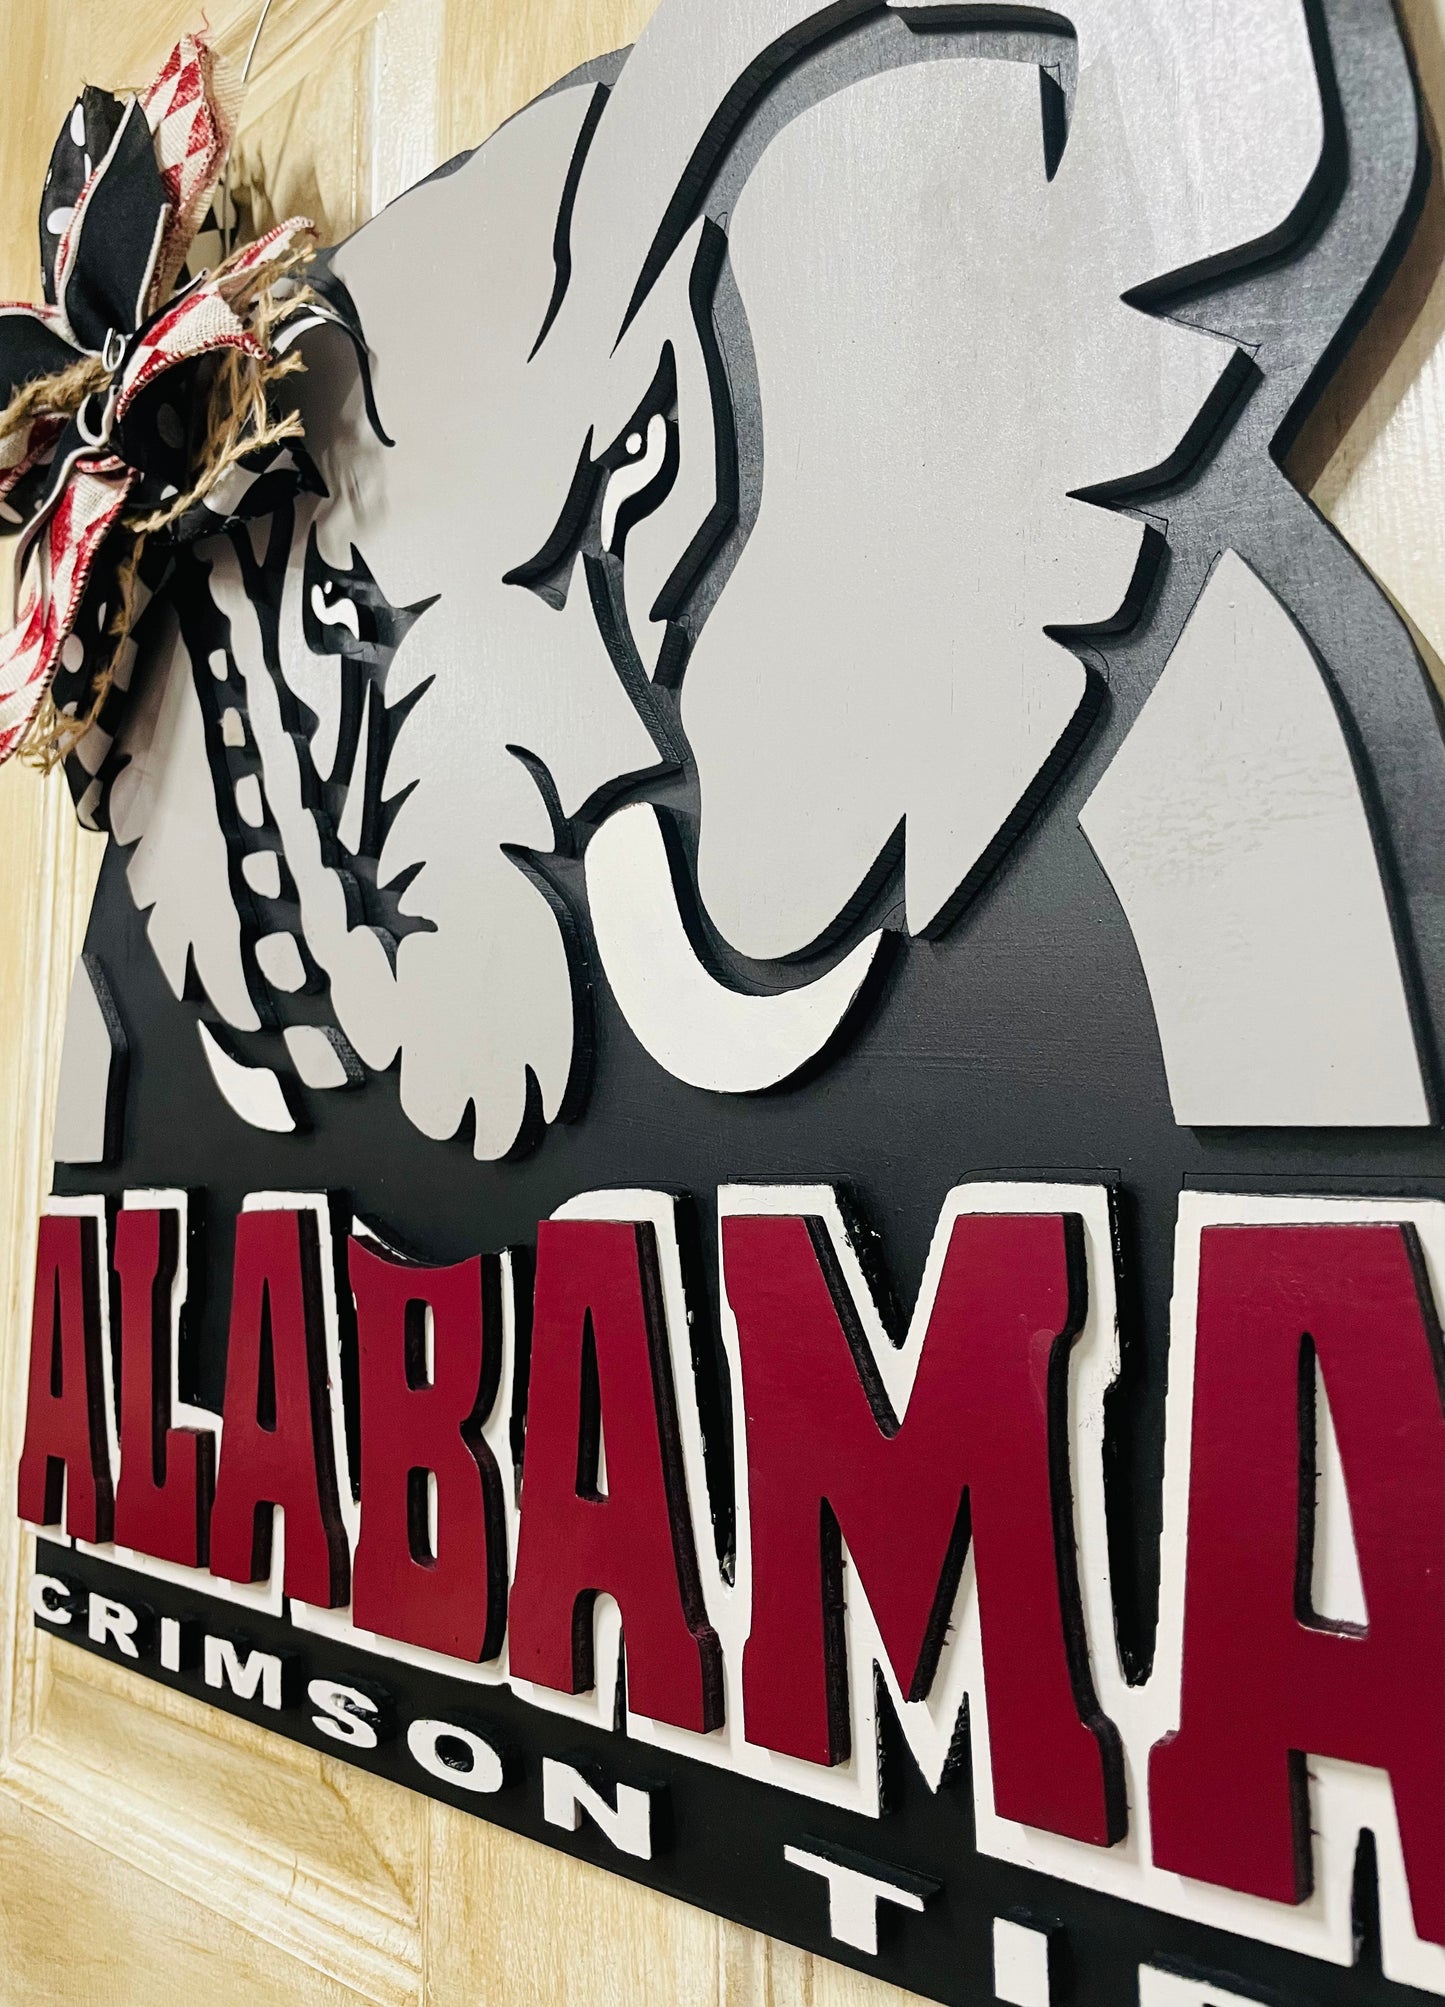 3D University of Alabama door sign